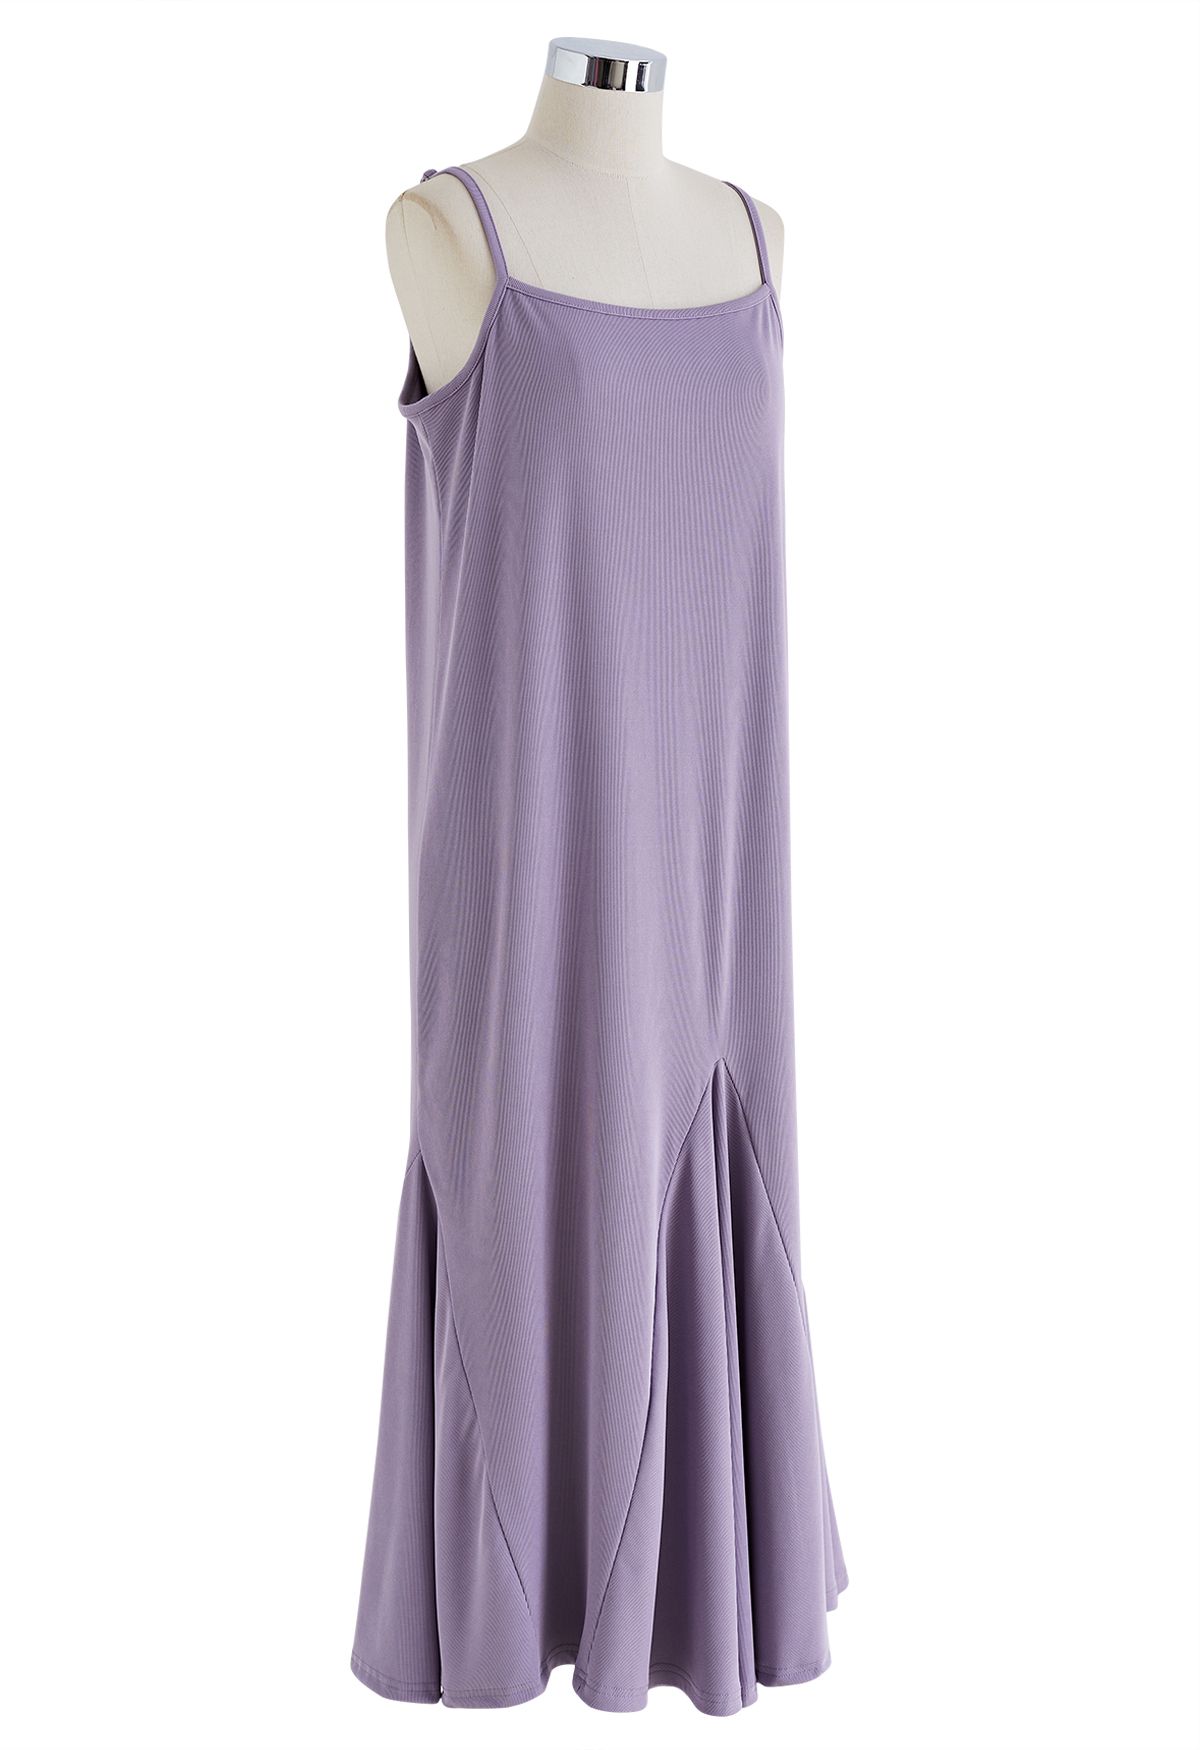 Einfarbiges Cami-Kleid mit Rüschensaum in Flieder